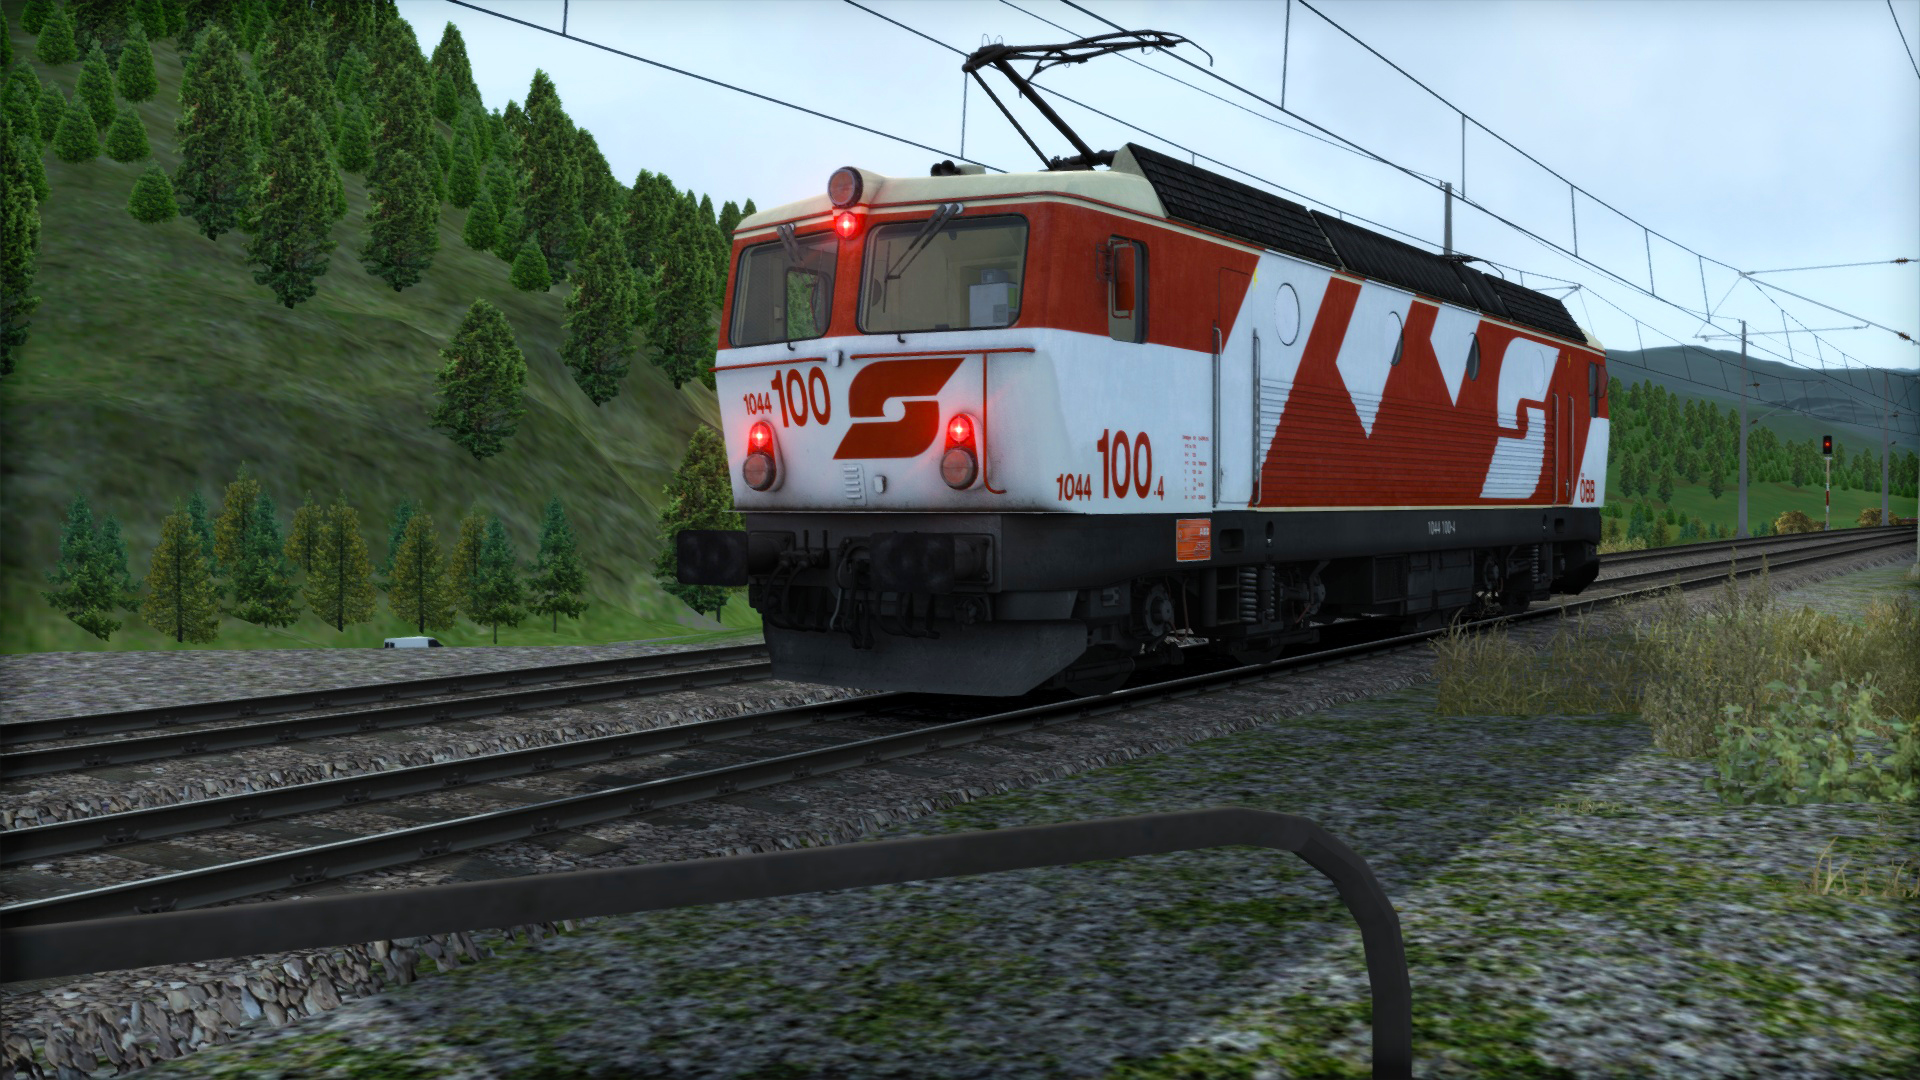 OBB 1044. OBB 1245. ÖBB class 1044. Австрийские федеральные железные дороги.